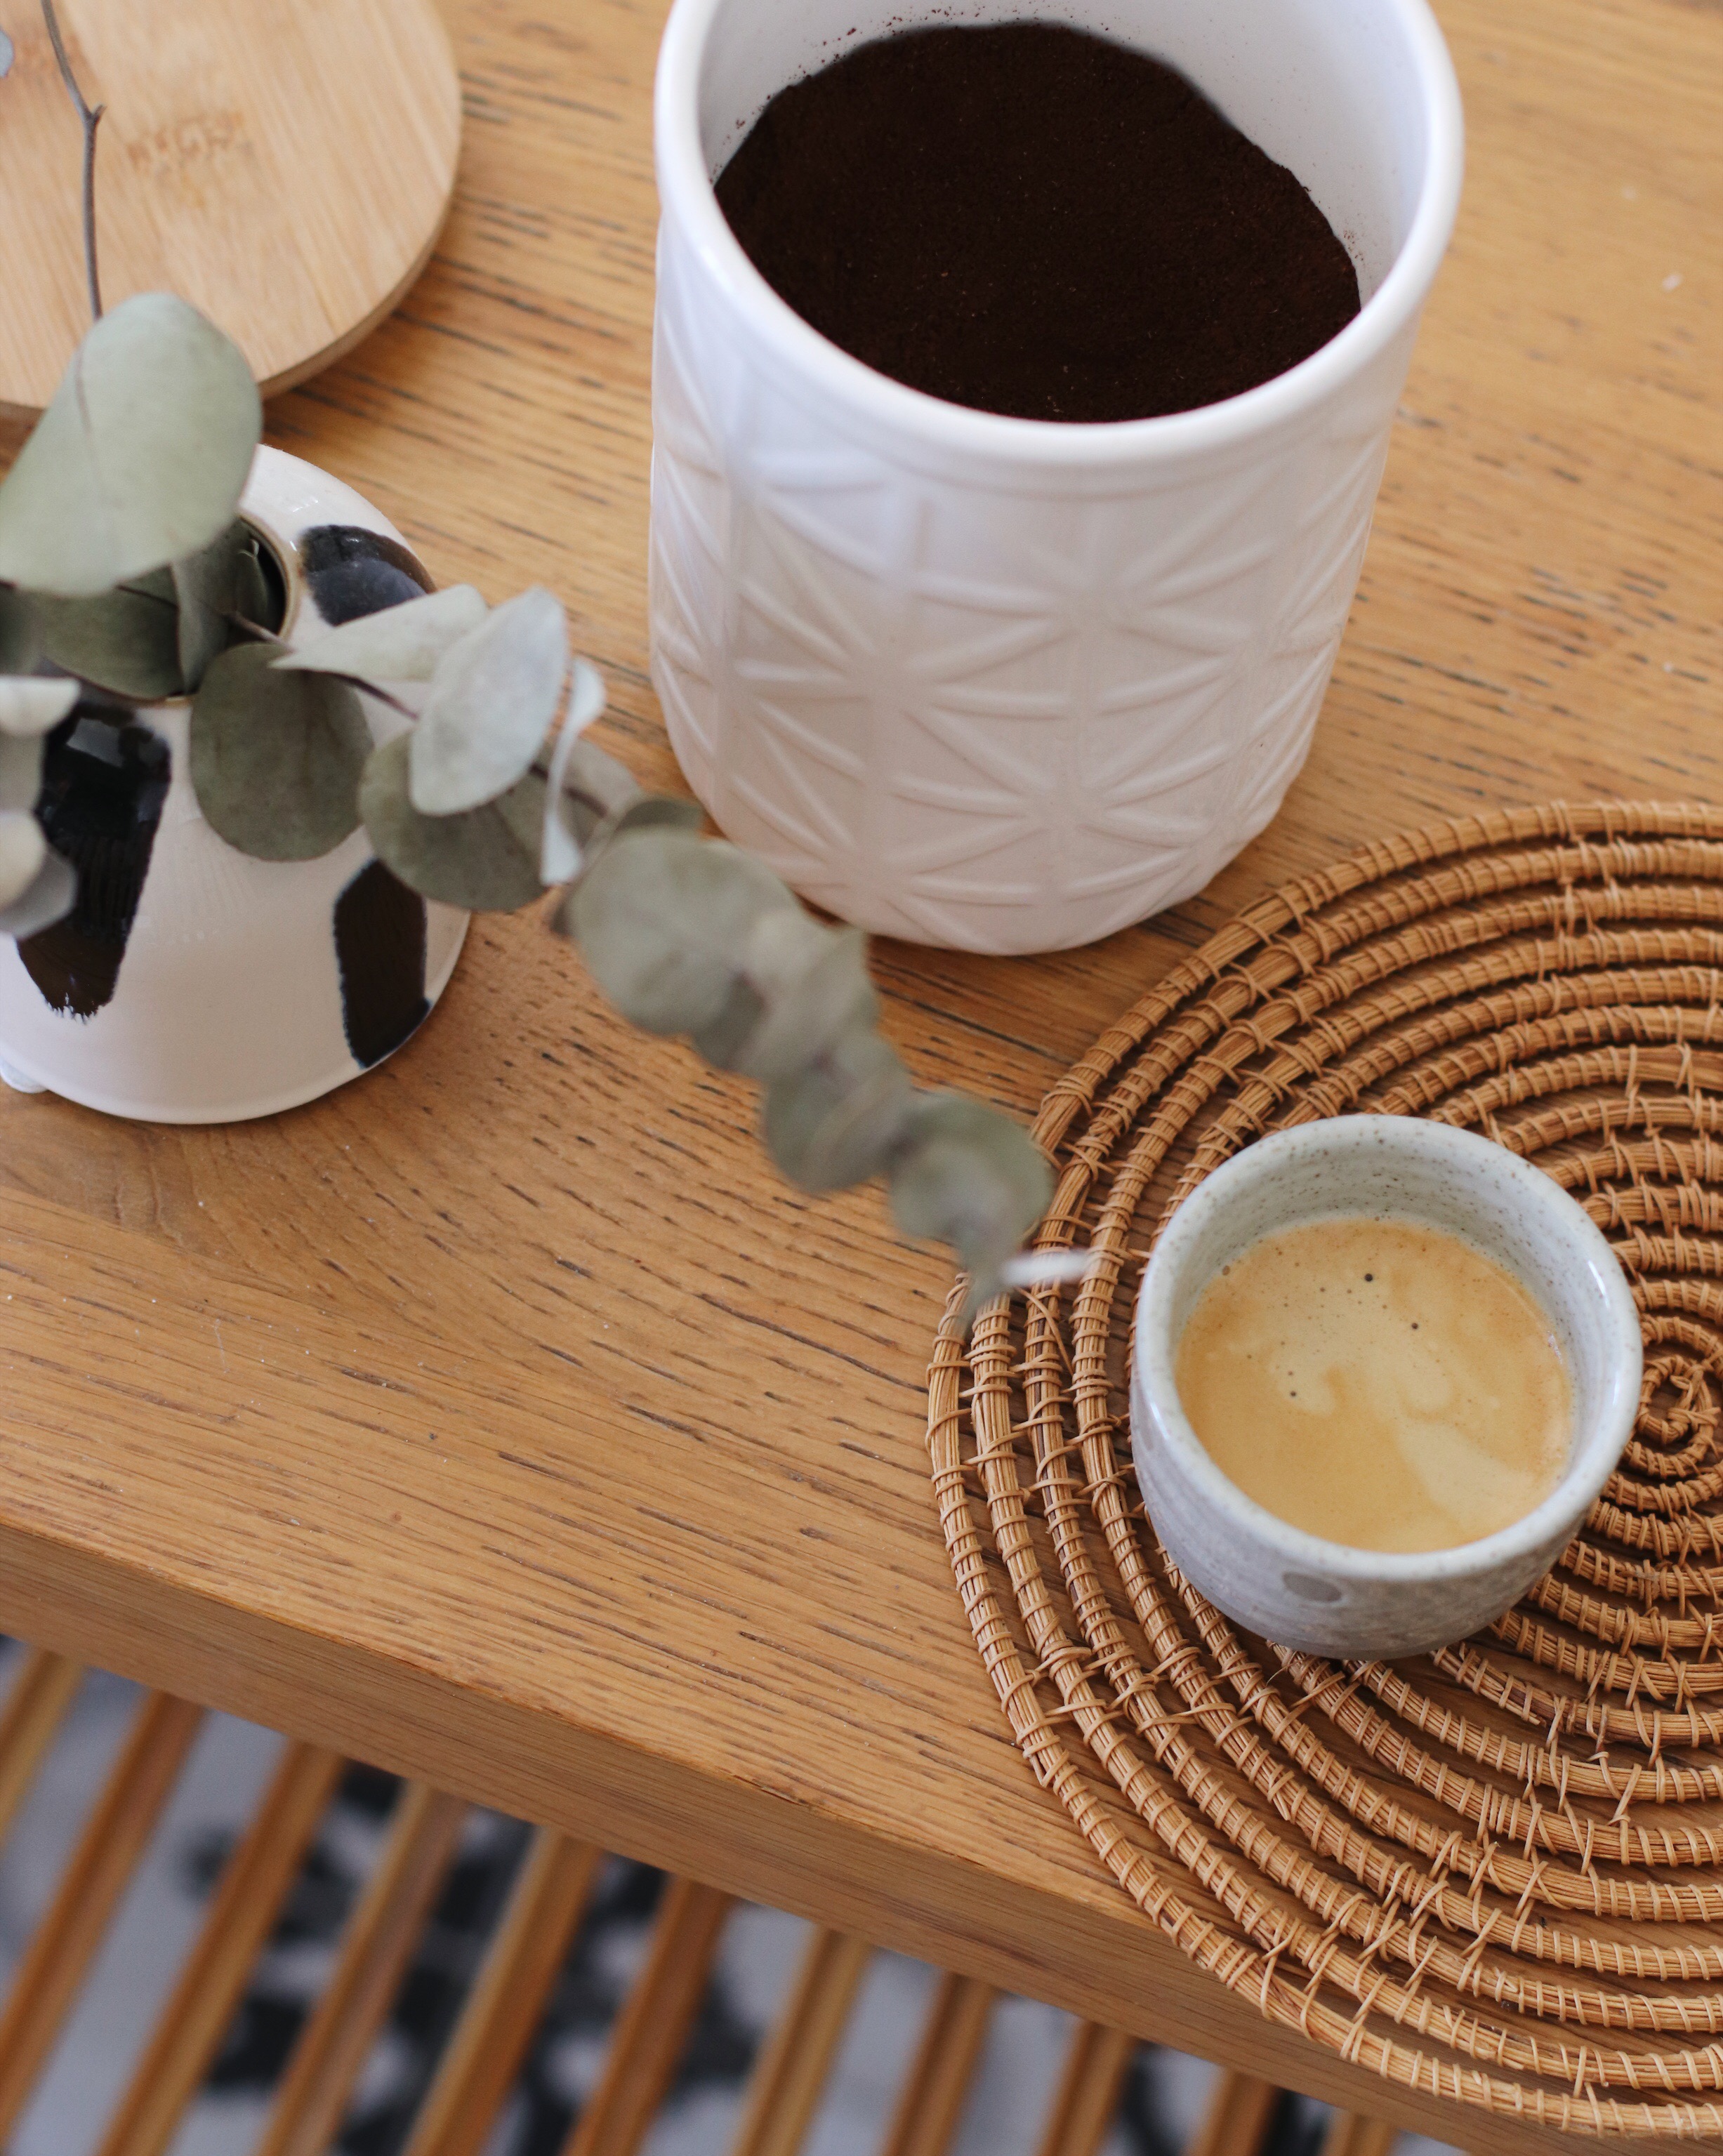 Comment enlever des taches de café dans une tasse ? – Blog BUT